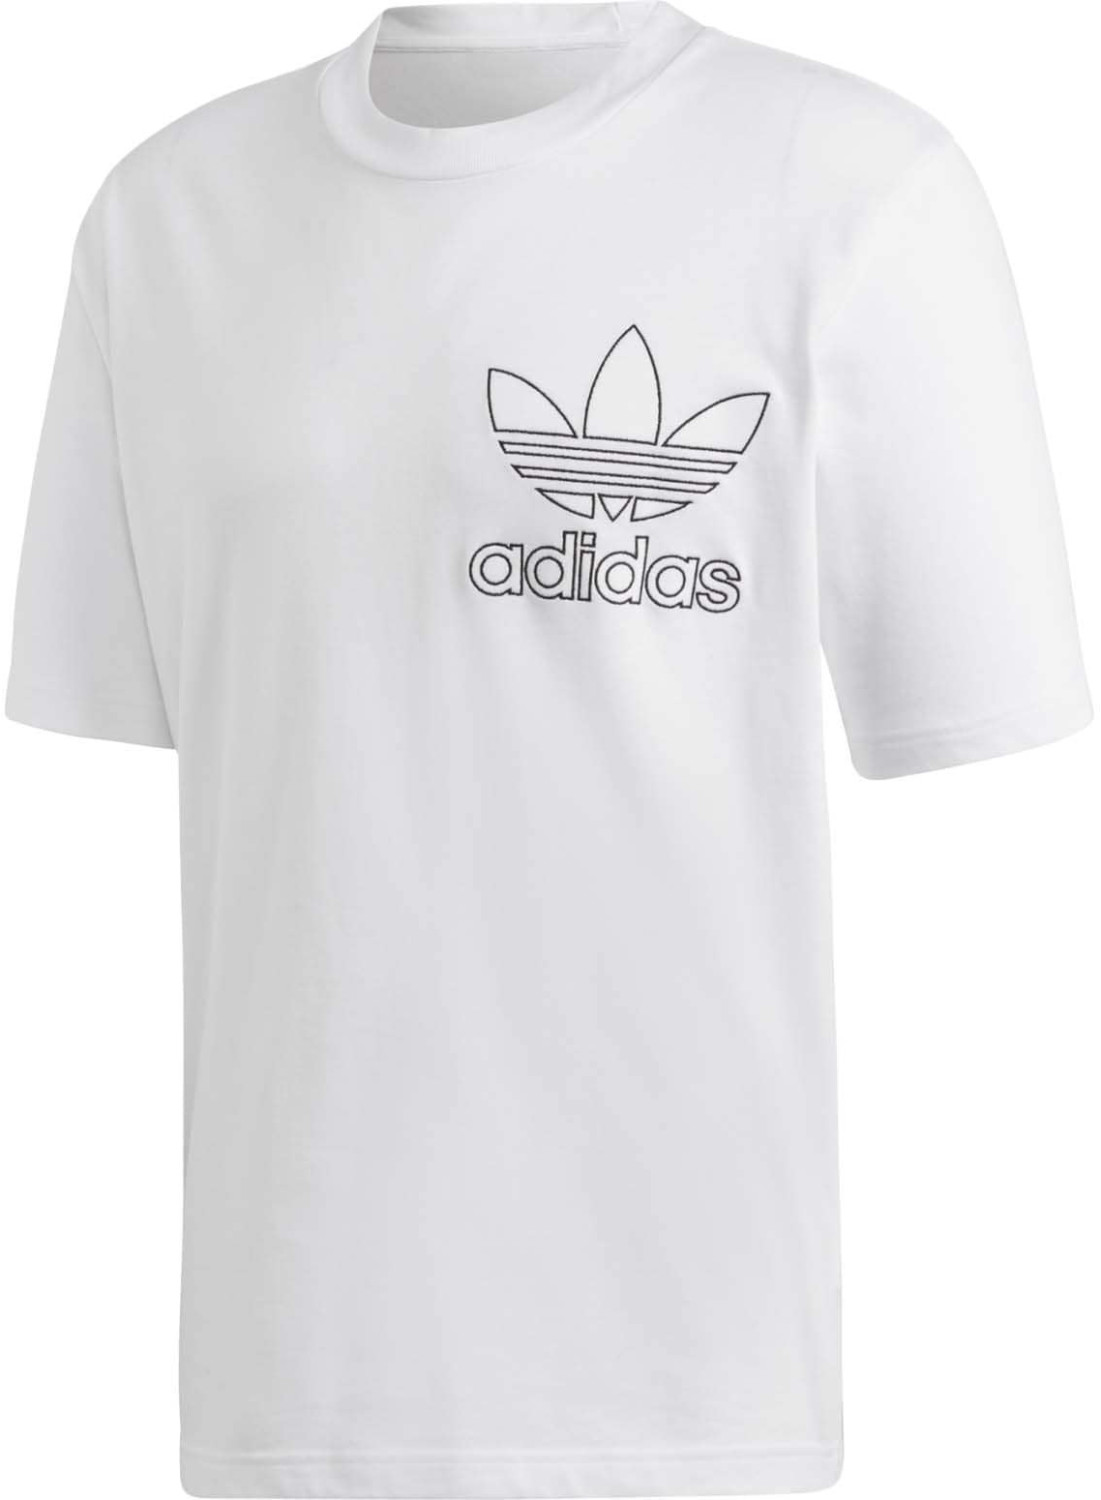 Adidas Outline T-Shirt (DV15)